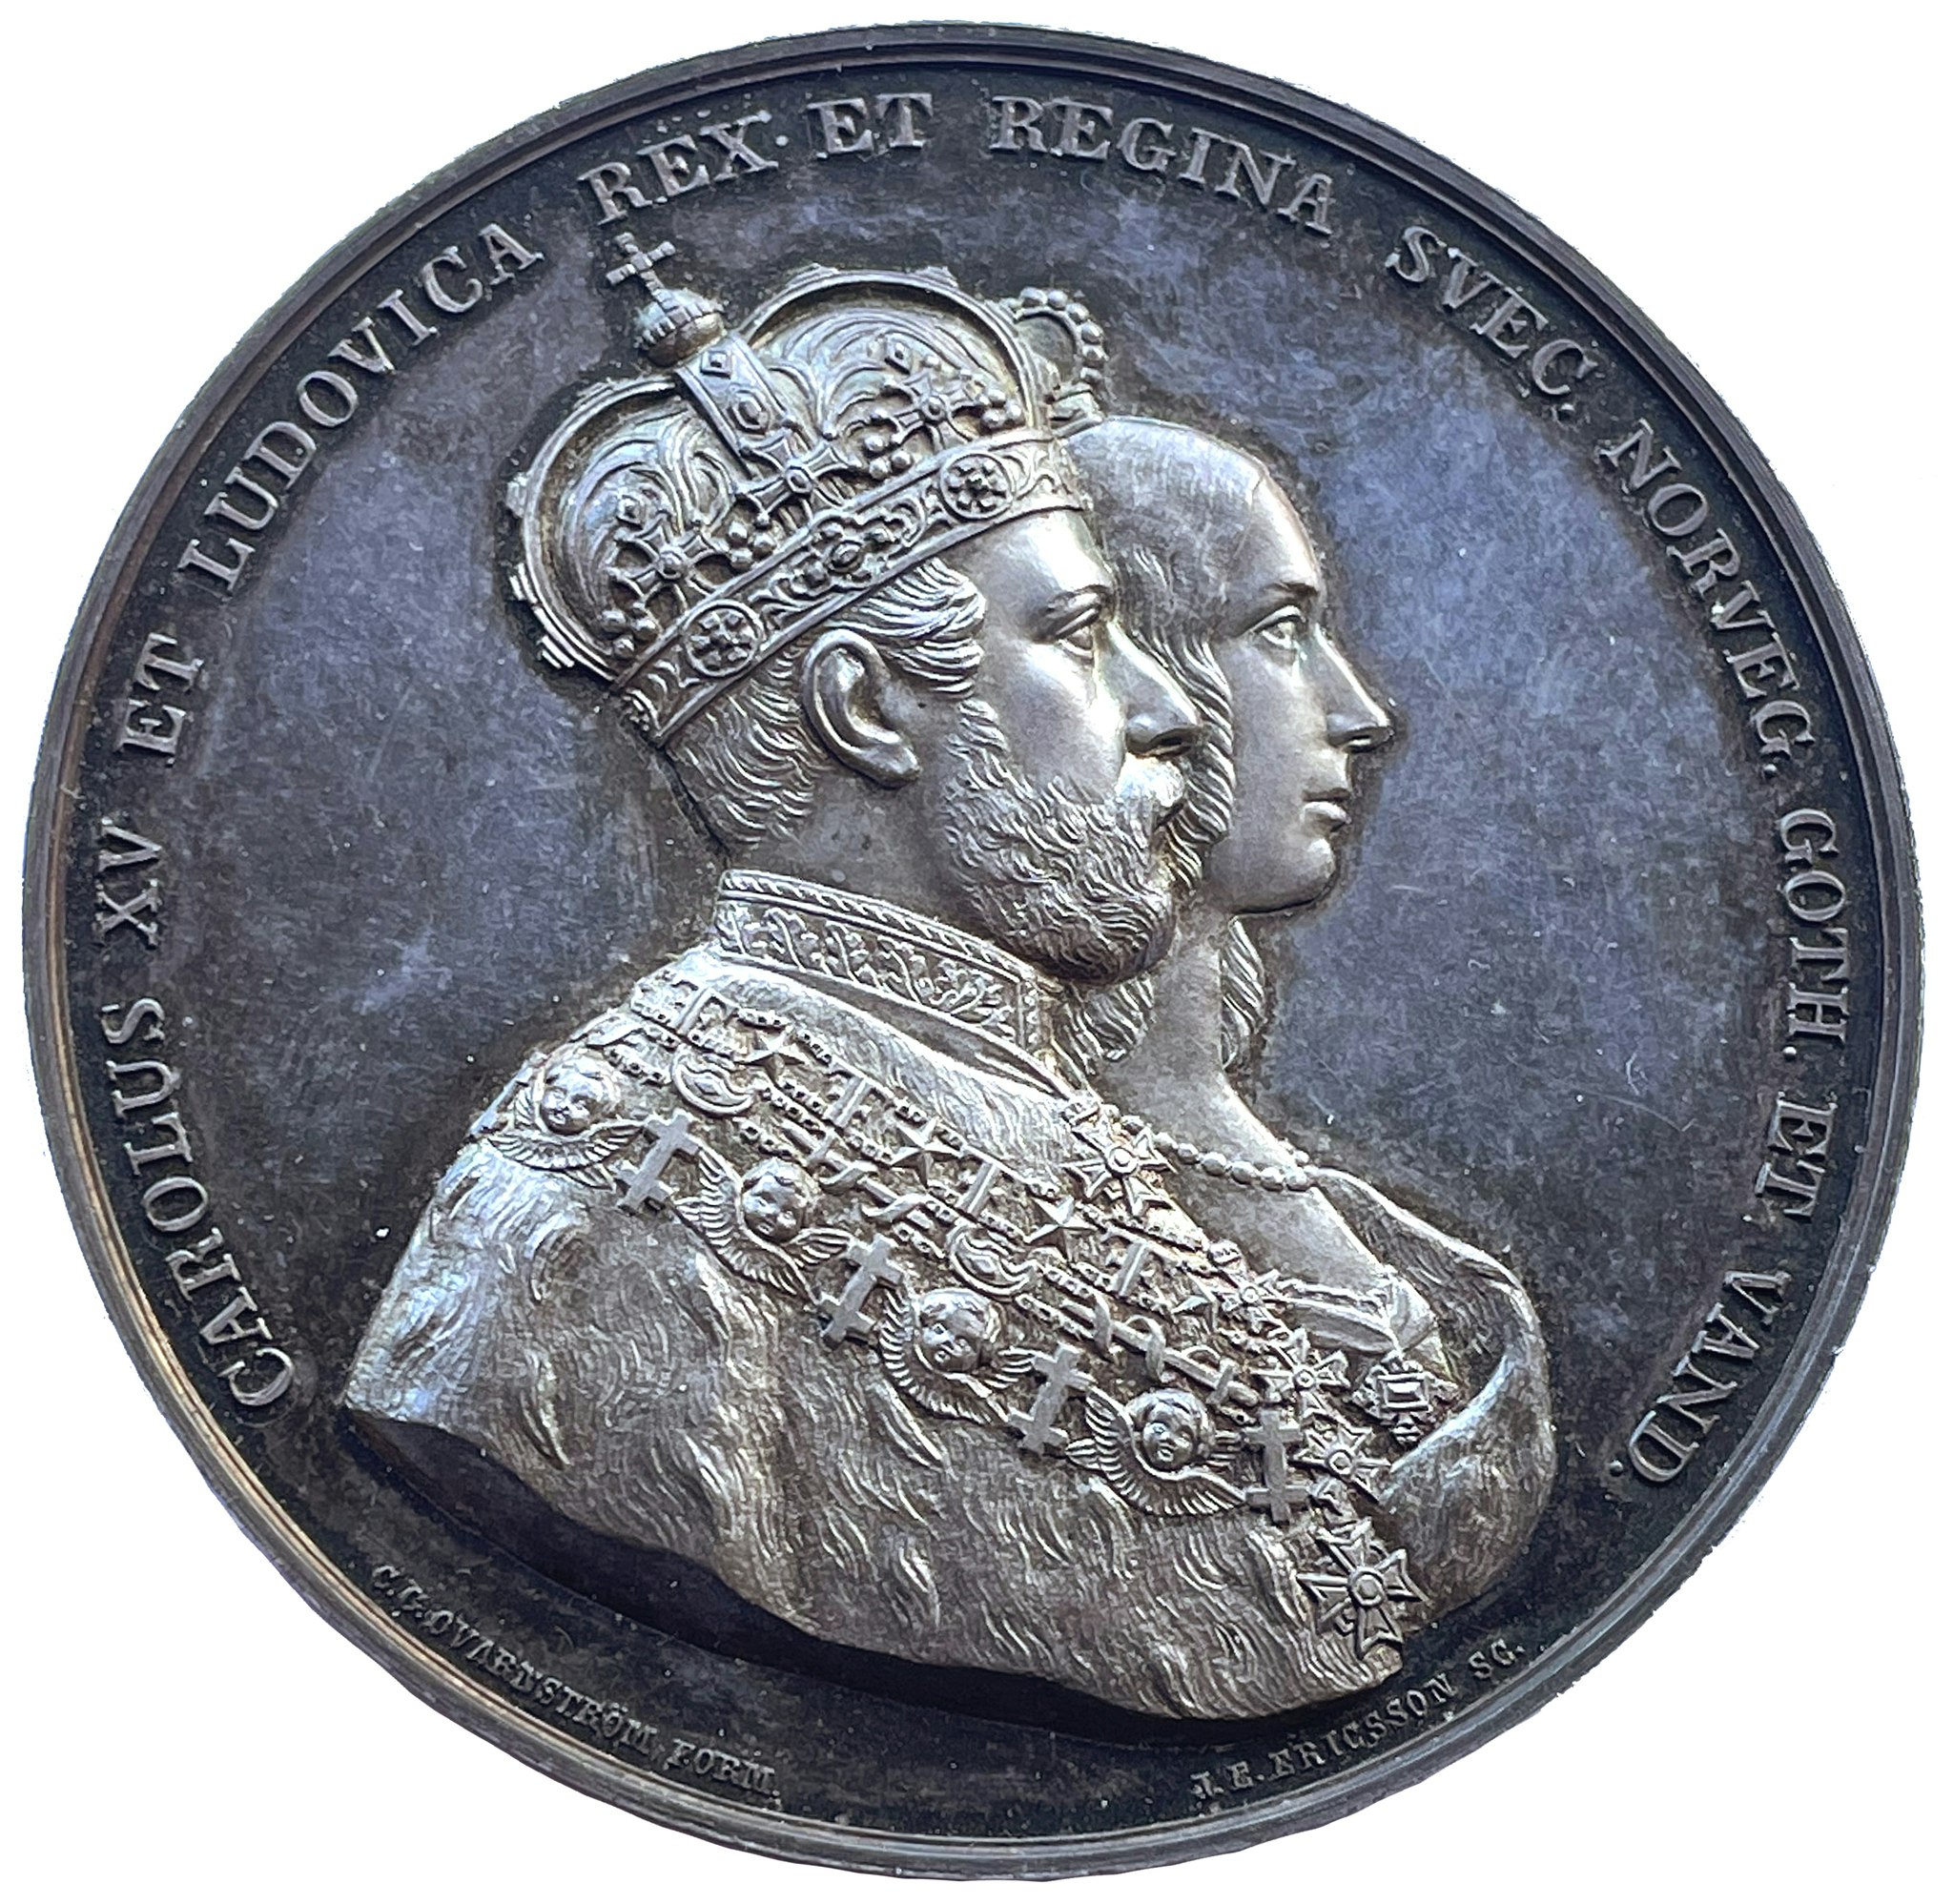 Karl XV och Lovisas kröning 3 maj 1860 - Ett ocirkulerat praktexemplar med frostad relief och djupt spegelglänasande fält av Ericsson